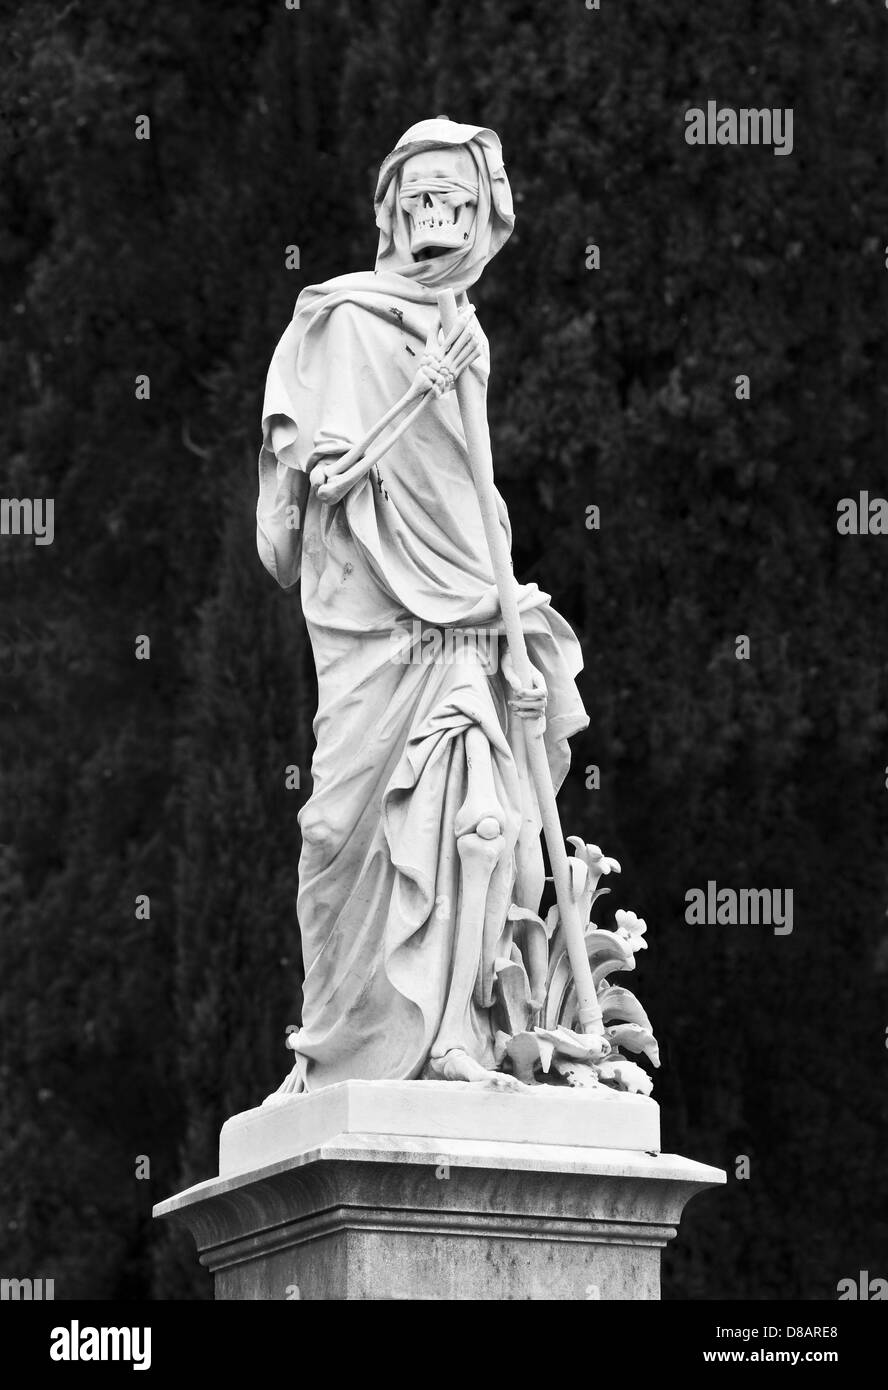 Une sculpture victorienne de la mort aveuglée, la sinistre couche, avec son scythe, dans le cimetière anglais, Florence, Italie (b/b) Banque D'Images